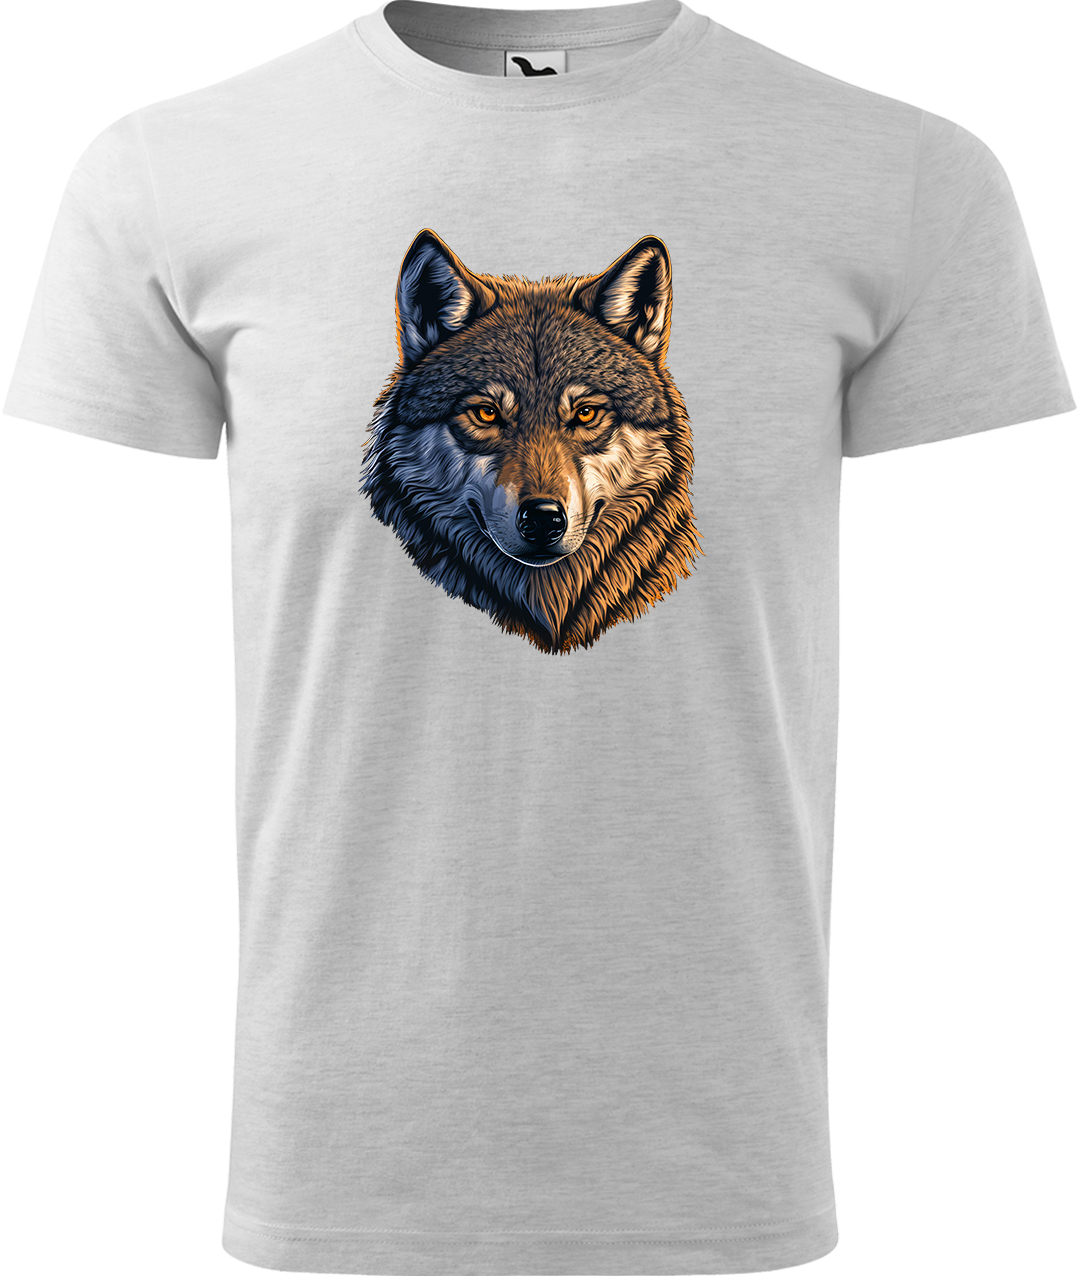 Pánské tričko s vlkem - Hlava vlka Velikost: XL, Barva: Světle šedý melír (03), Střih: pánský